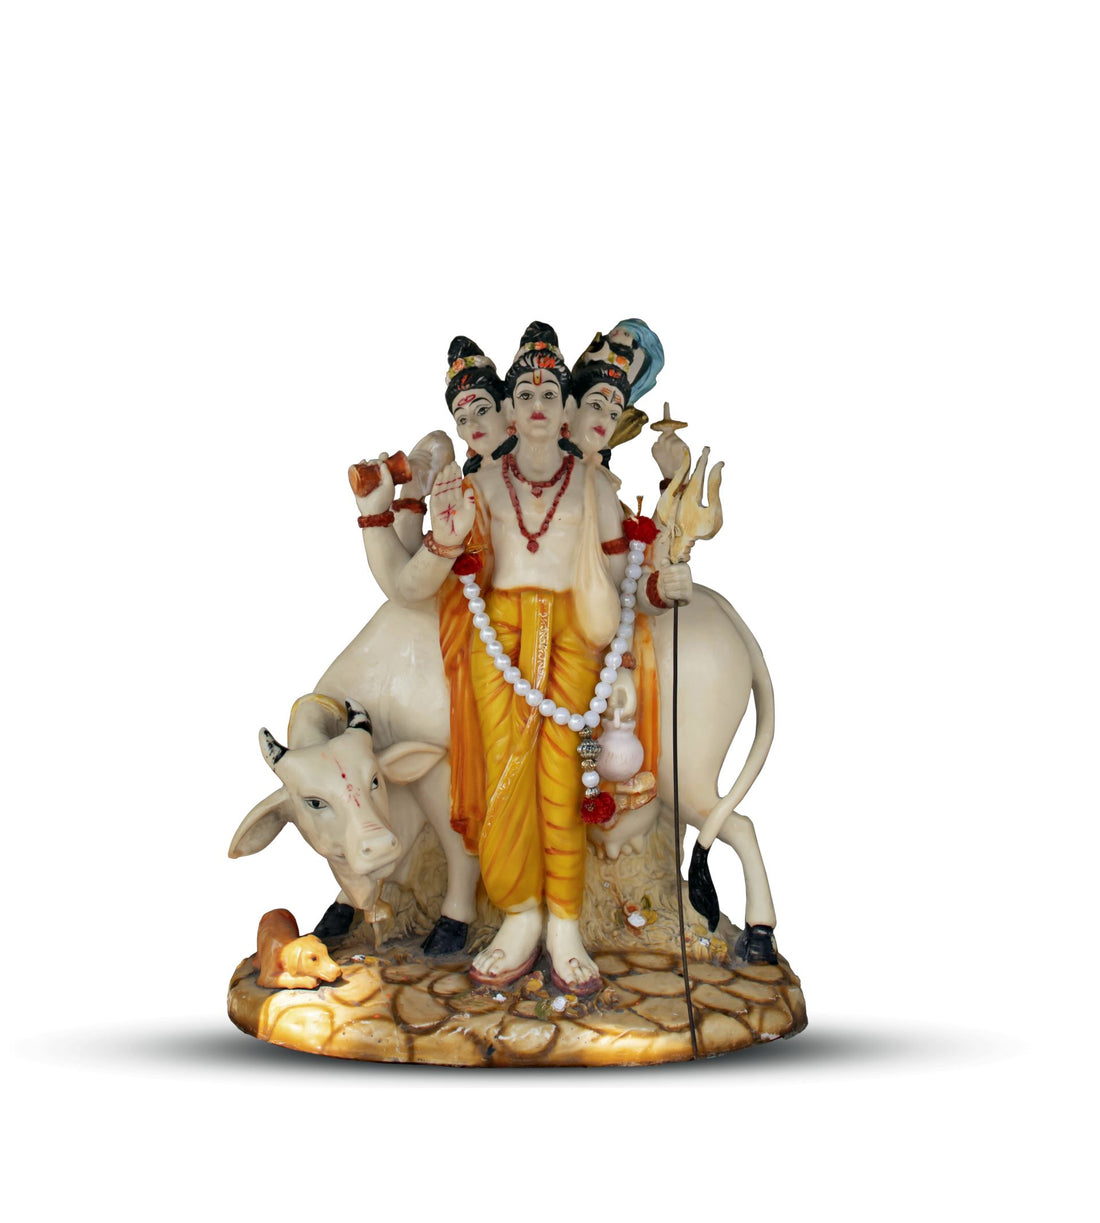 Divine Offerings to Shri Guru Dattatreya and Other Spiritual Avatars